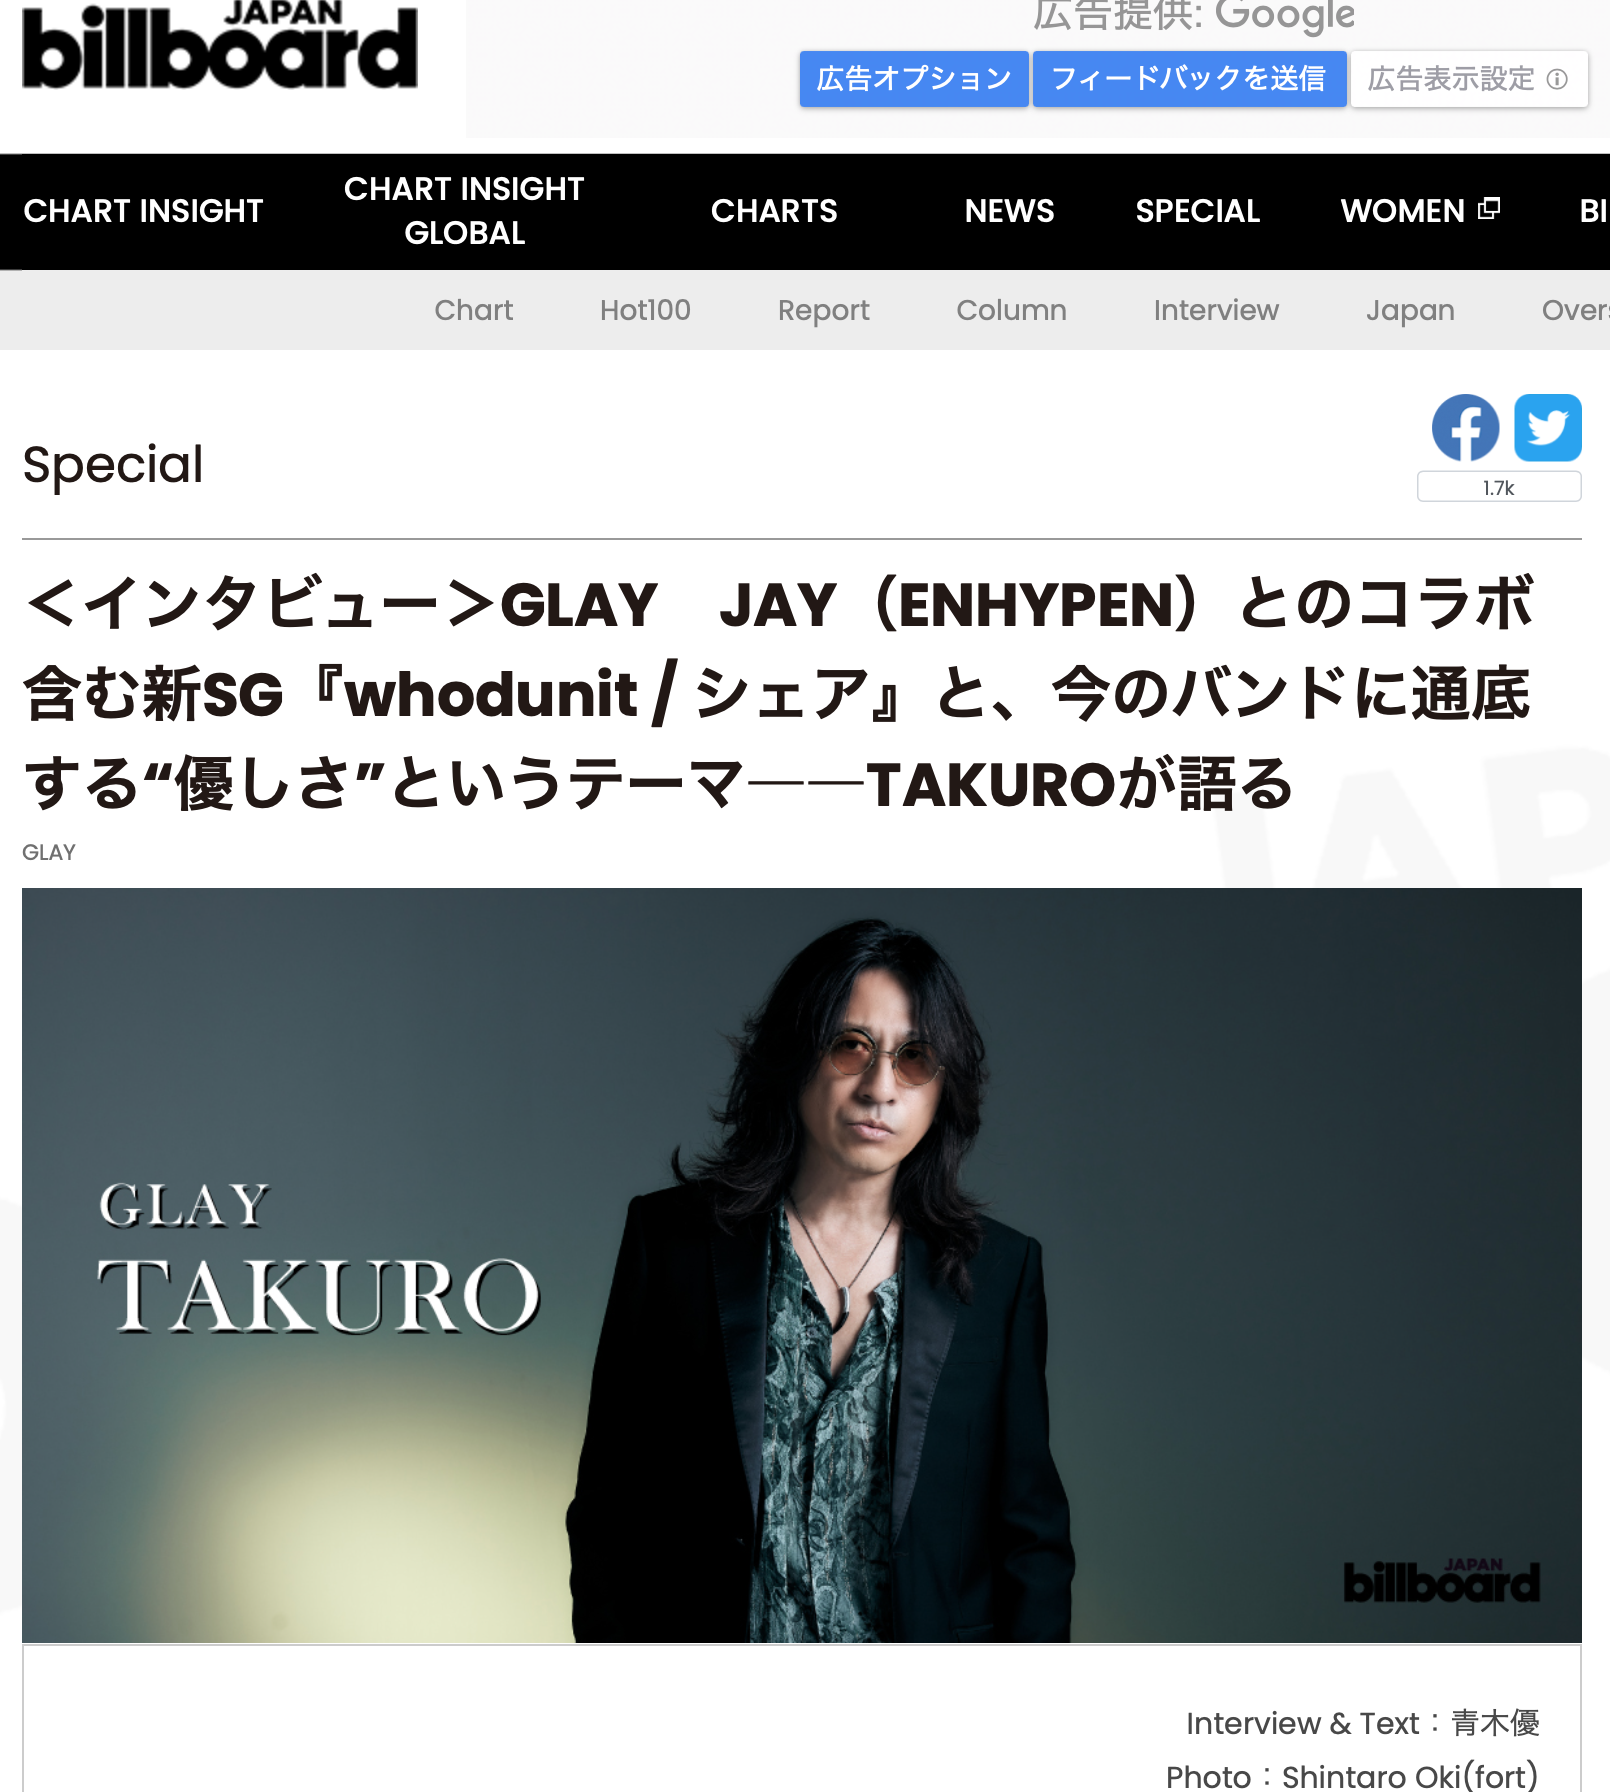 大木慎太郎がビルボードジャパンのインタビューでGLAY TAKUROさんを撮影しました